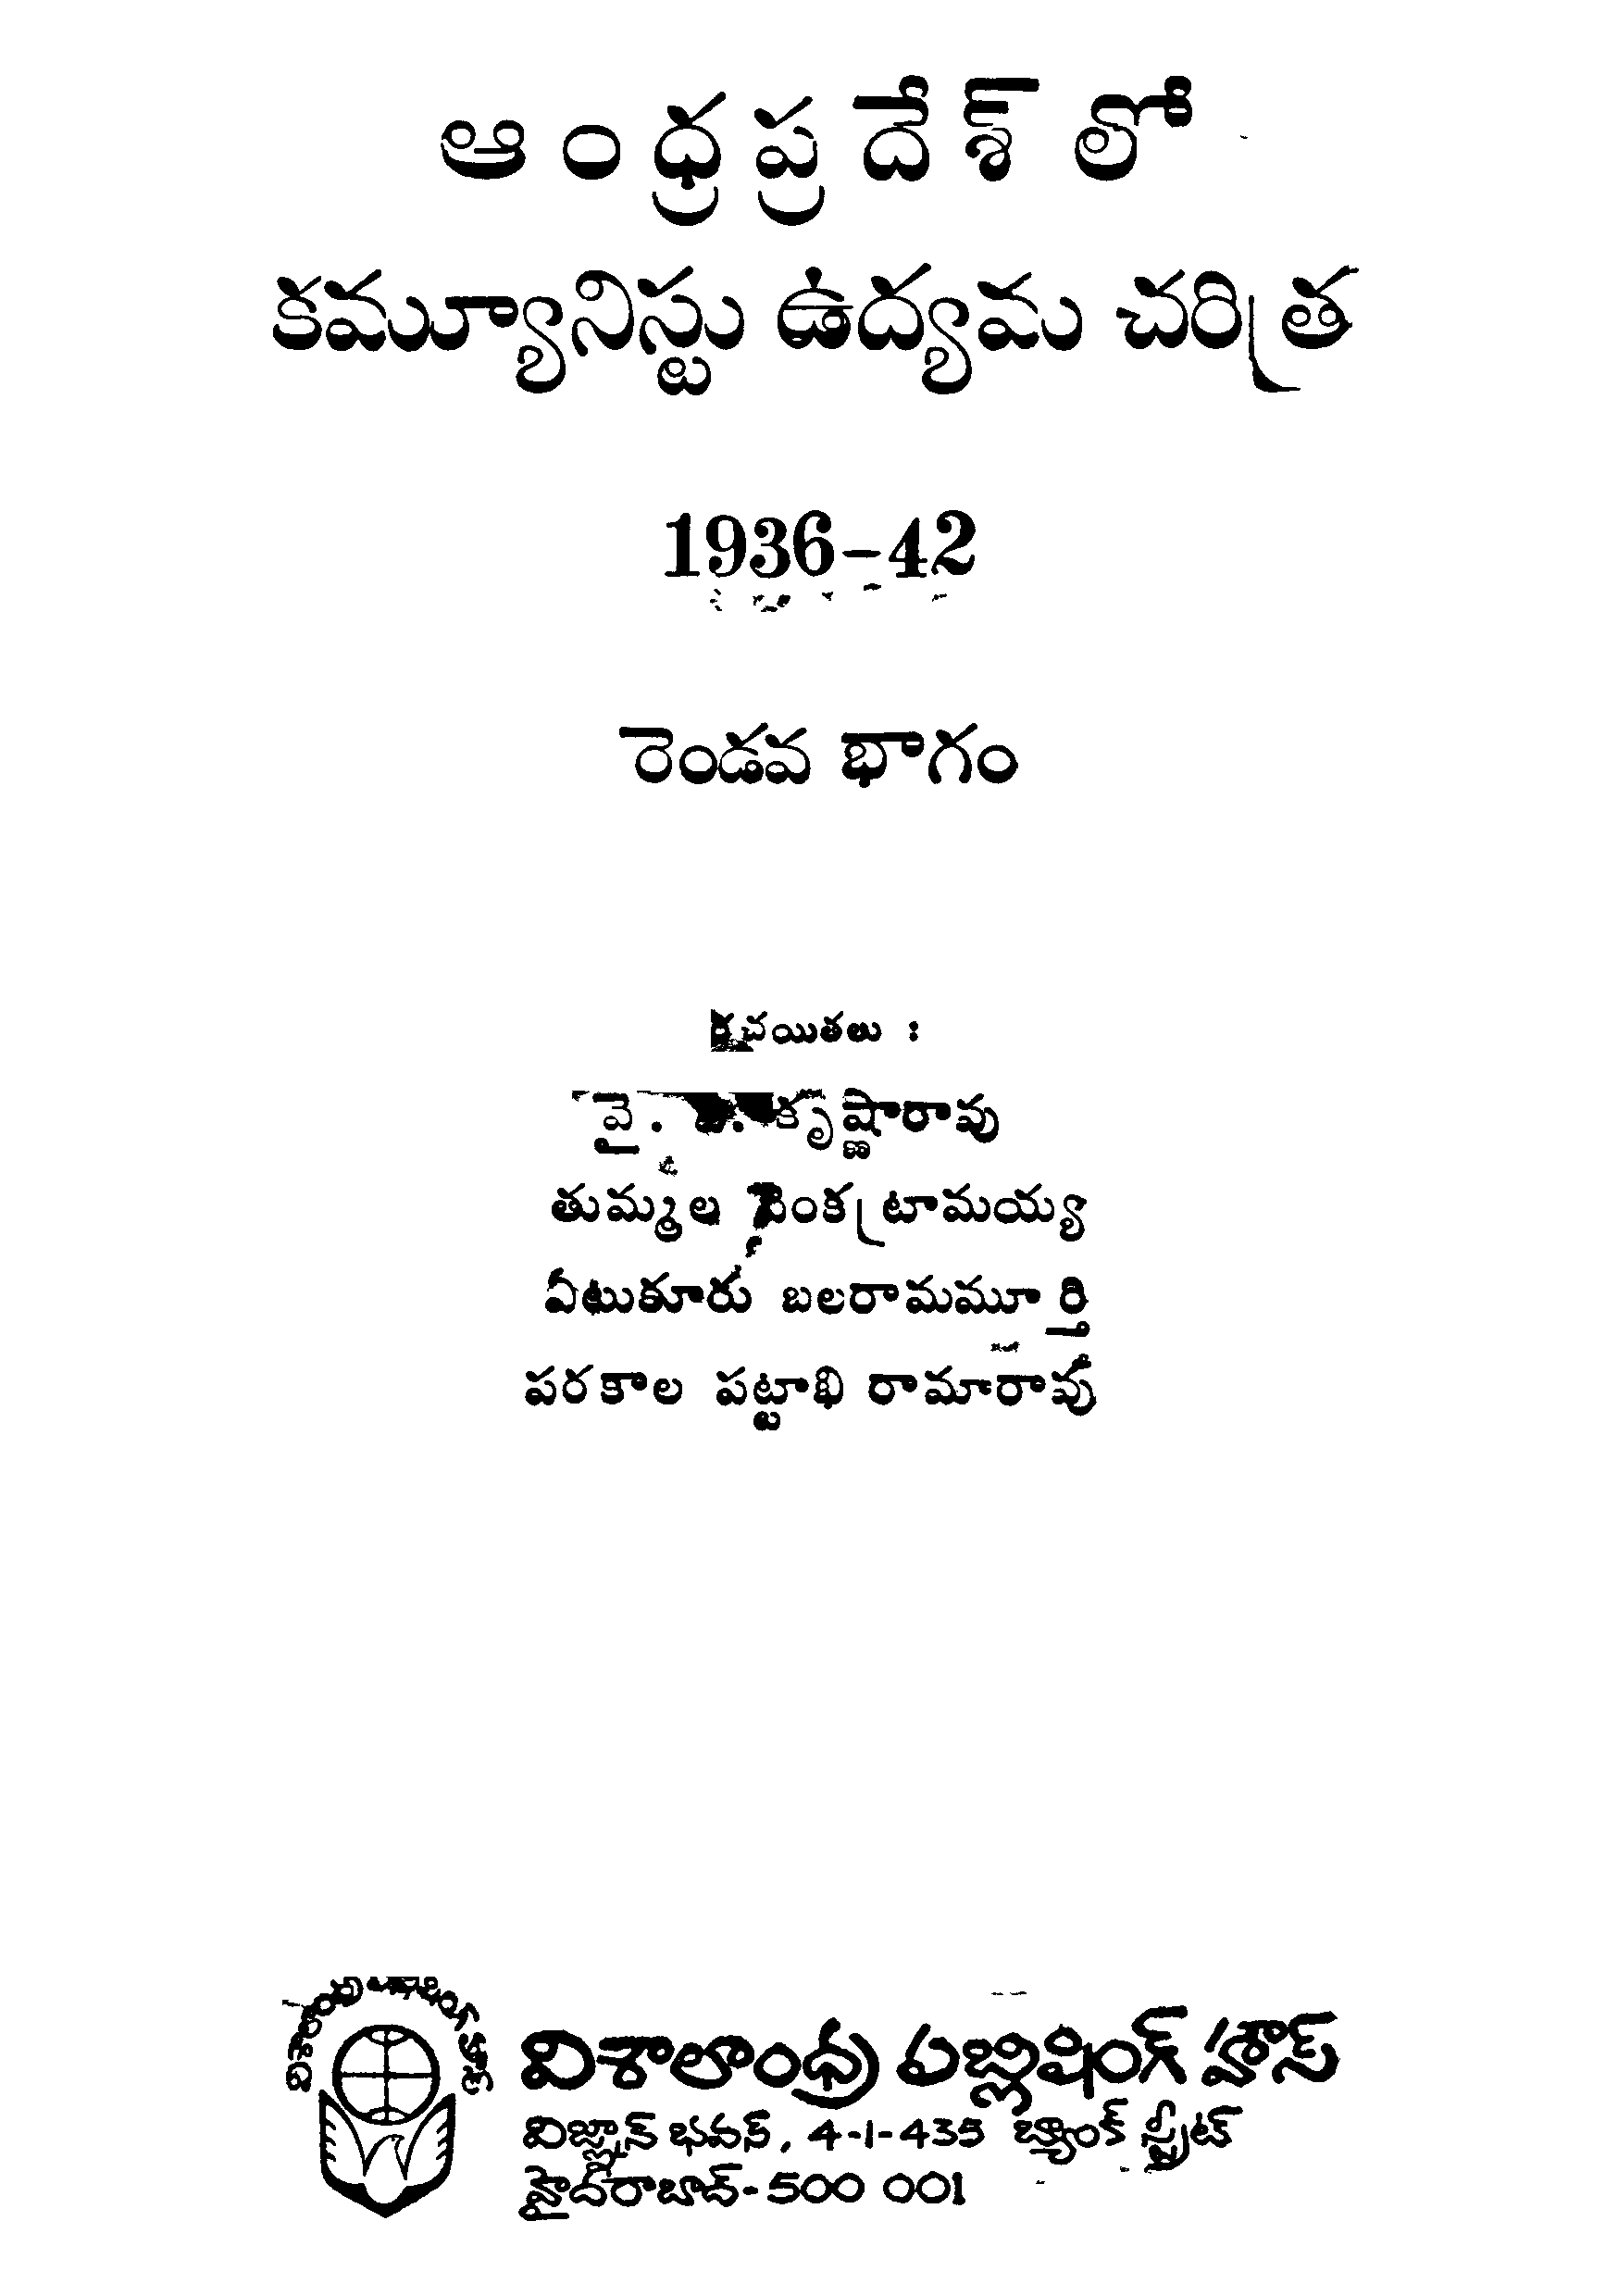 ఆంధ్రప్రదేశ్ లో కమ్యూనిస్టు  ఉద్యమం చరిత్ర 1936-42  (రెండవ భాగం)